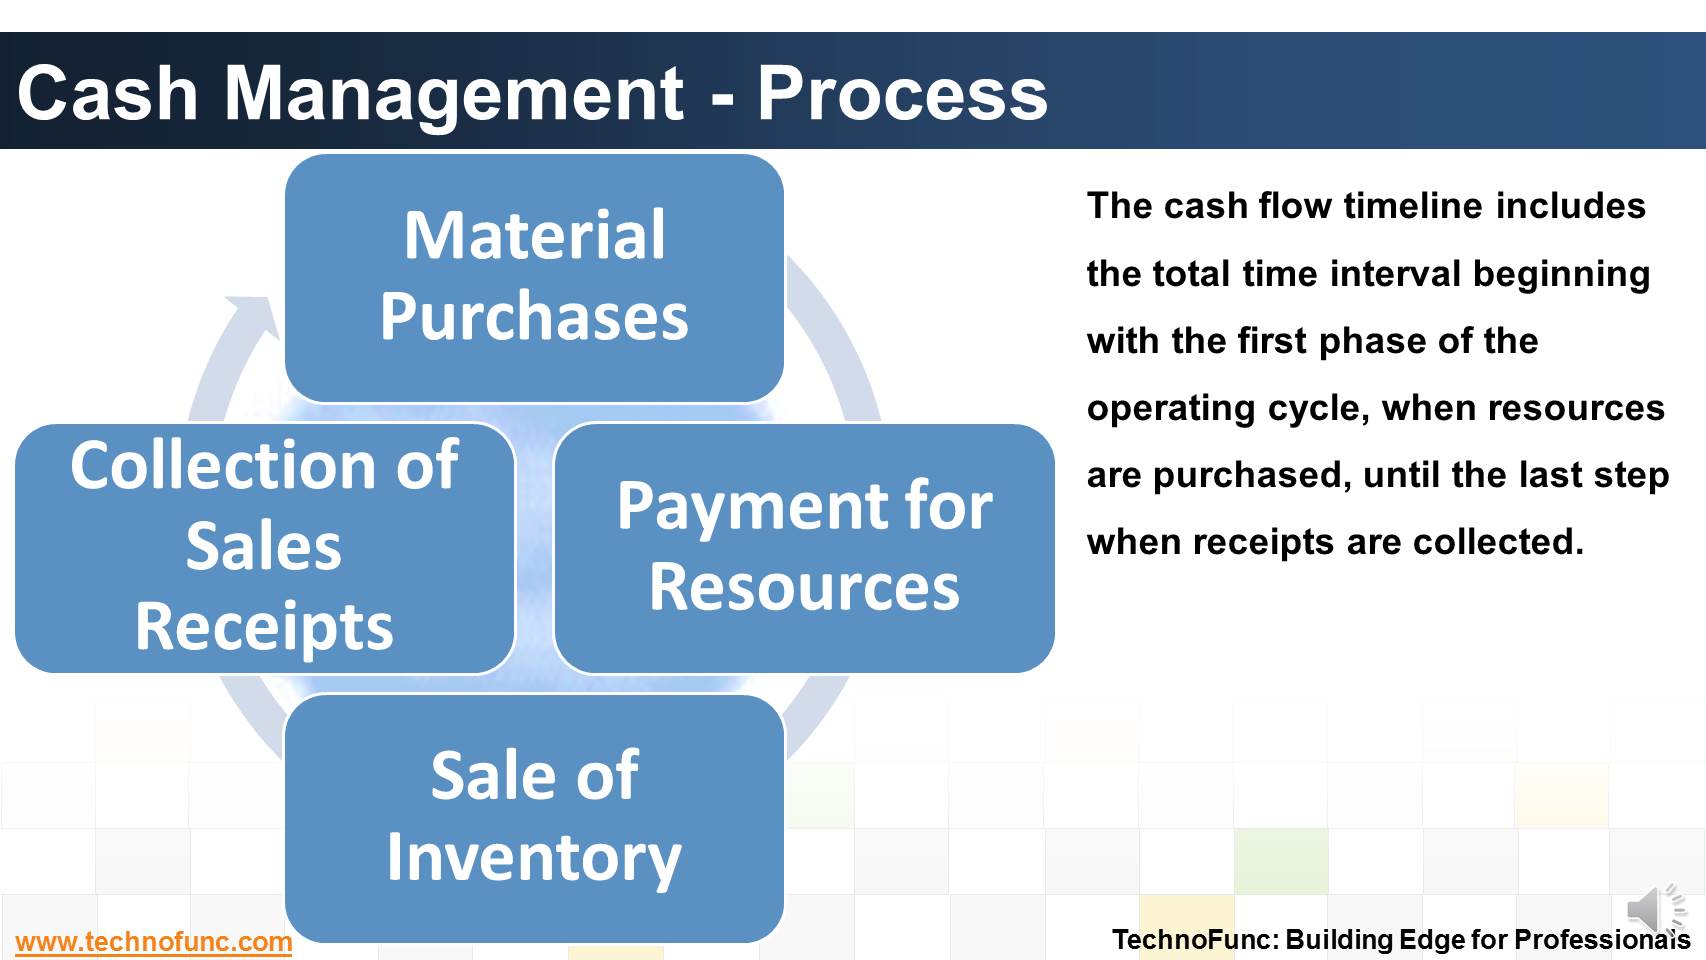 Cash Management - Process